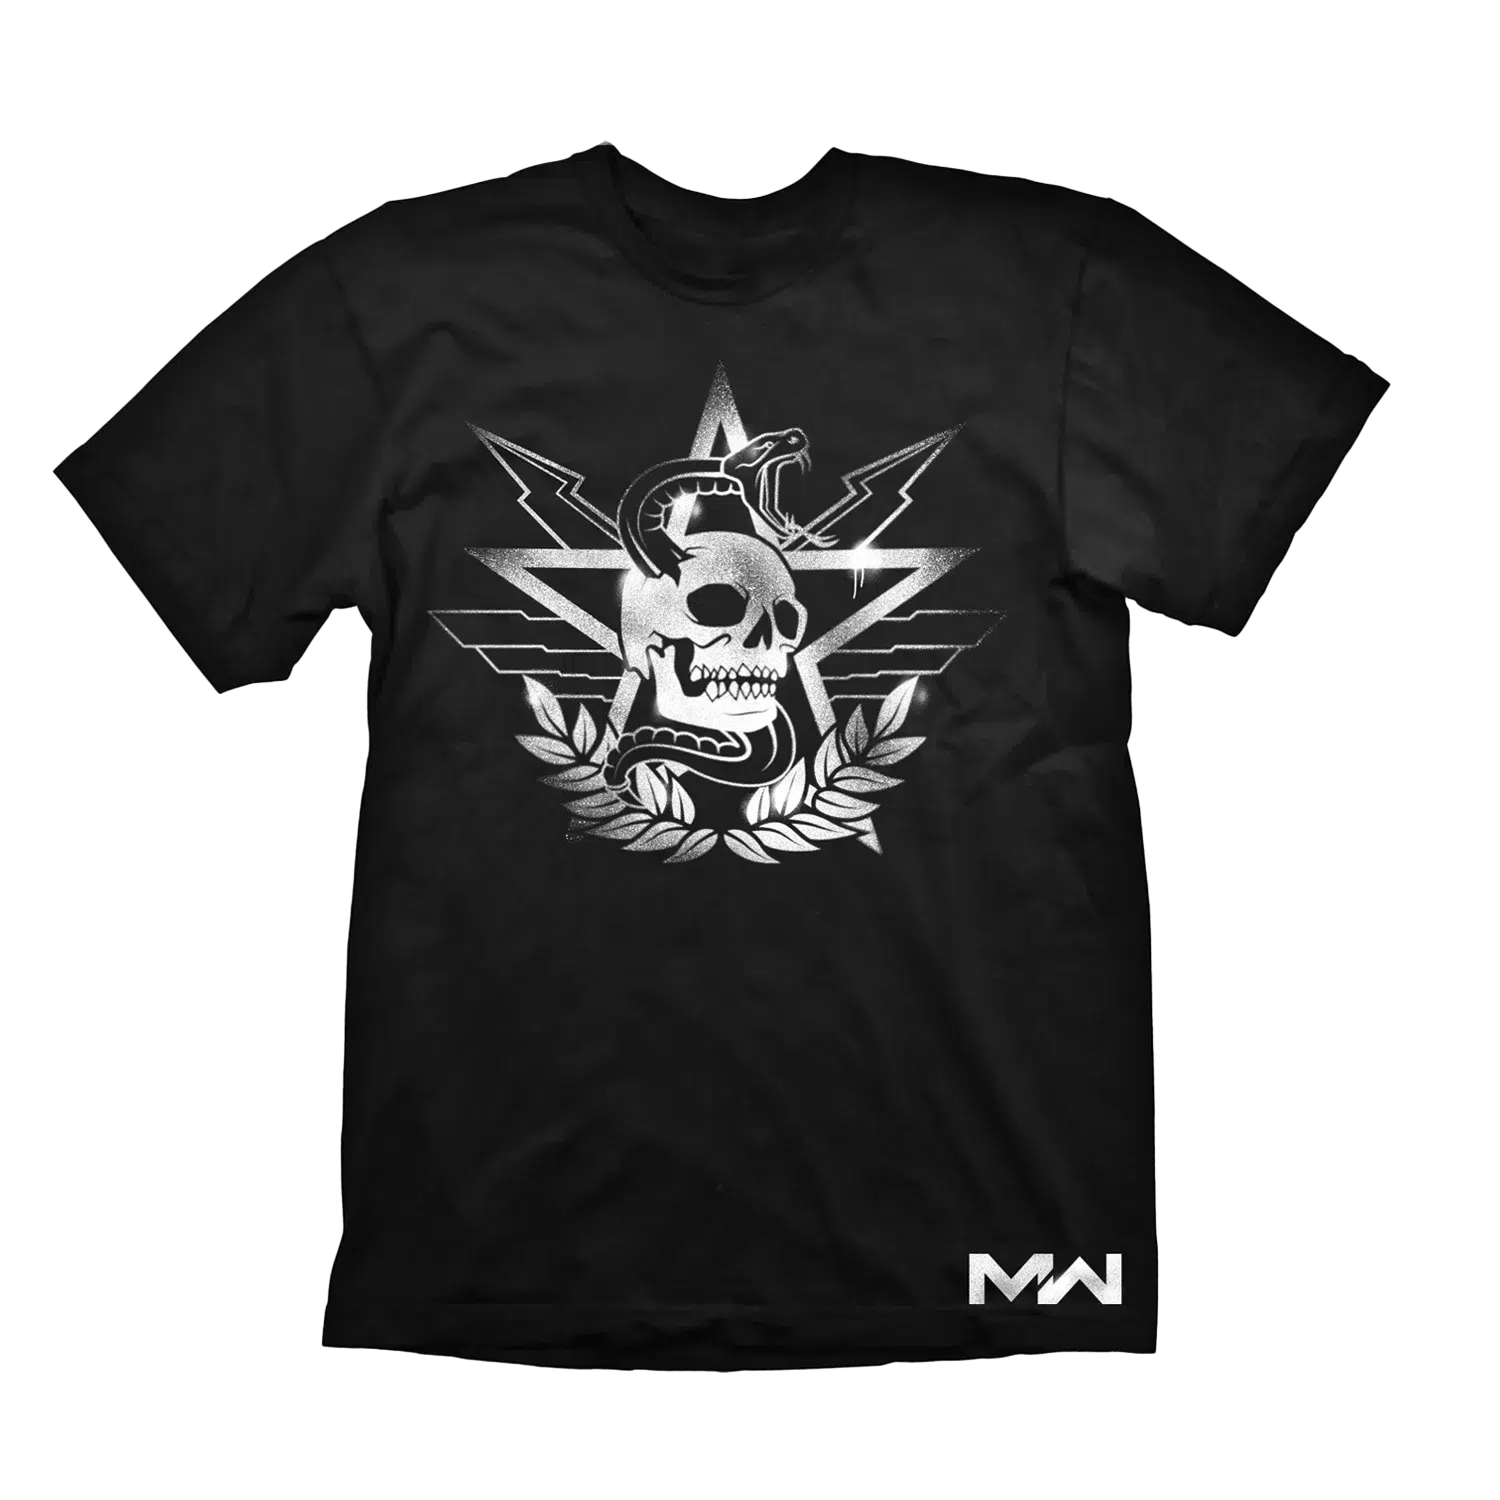 Call of Duty Modern Warfare T-Shirt "Allegiance"